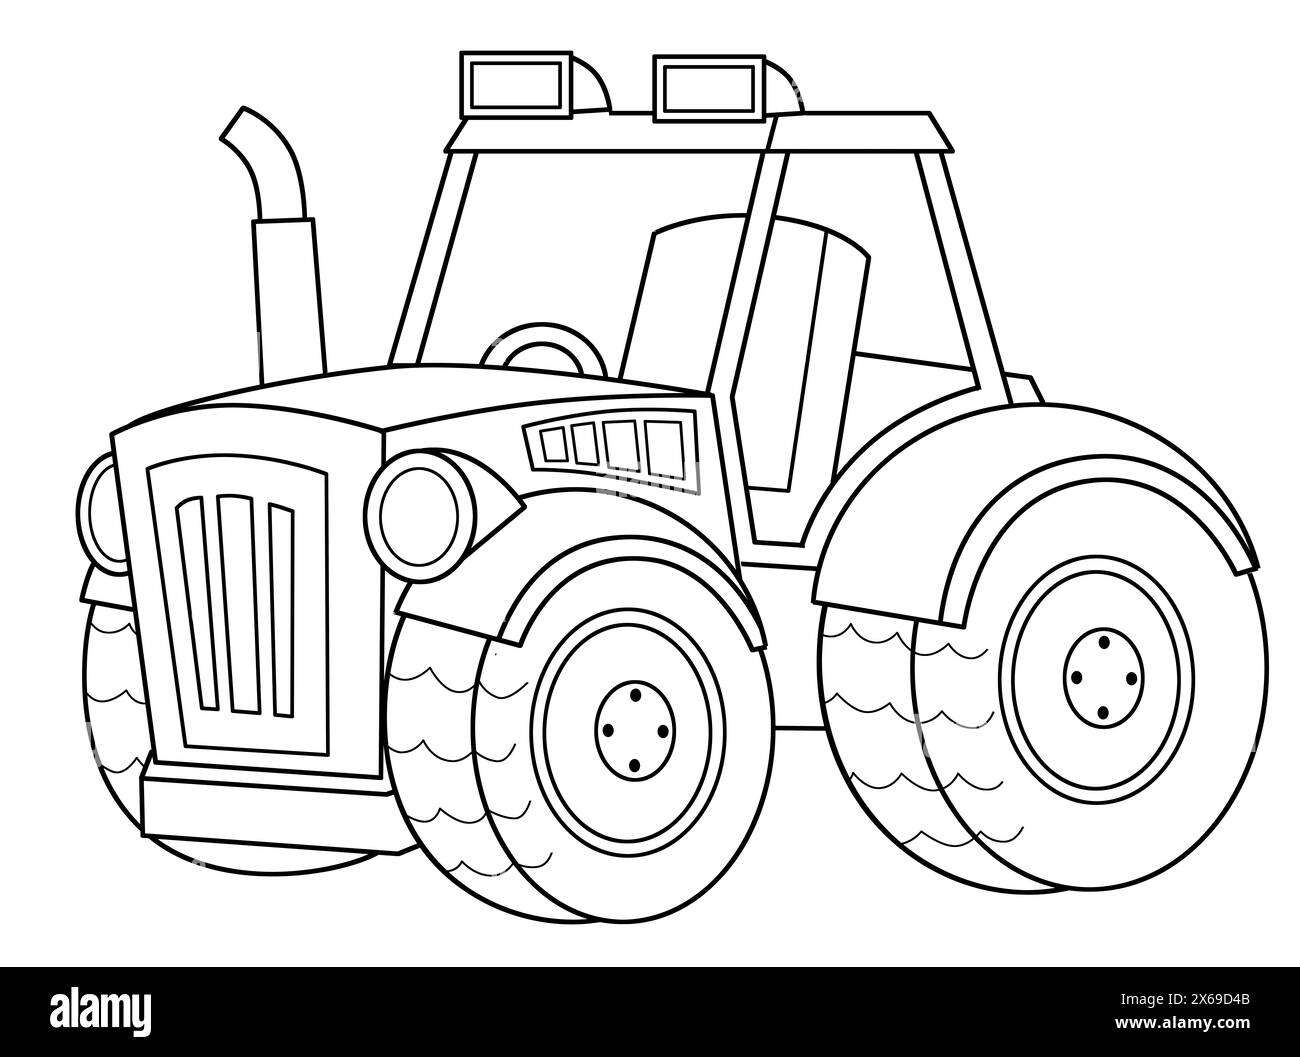 tracteur de voiture de ranch de ferme de dessin animé coloriage isolé illustration de fond isolée pour les enfants Banque D'Images